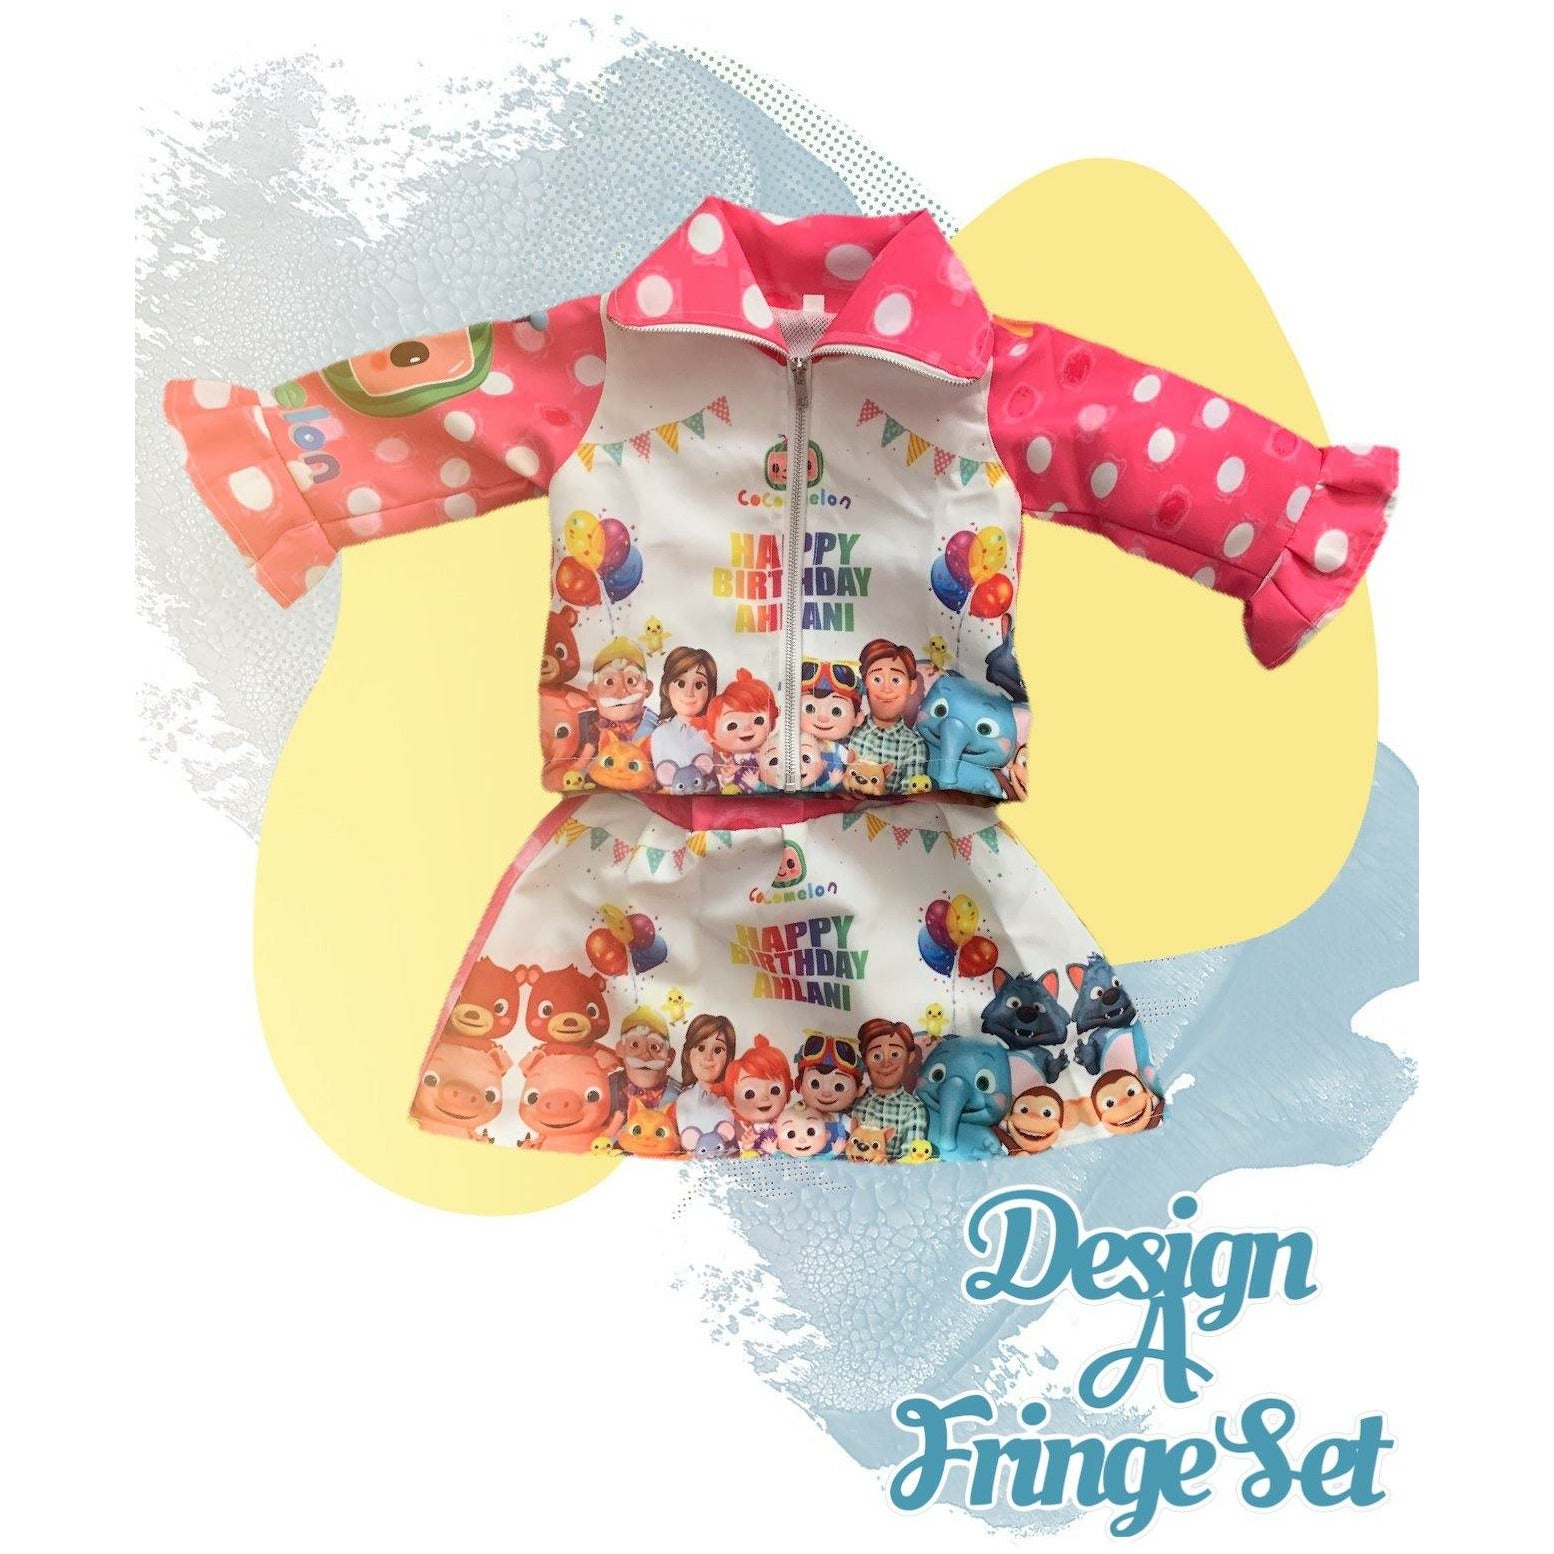 Design a fringe set - DimiRogue